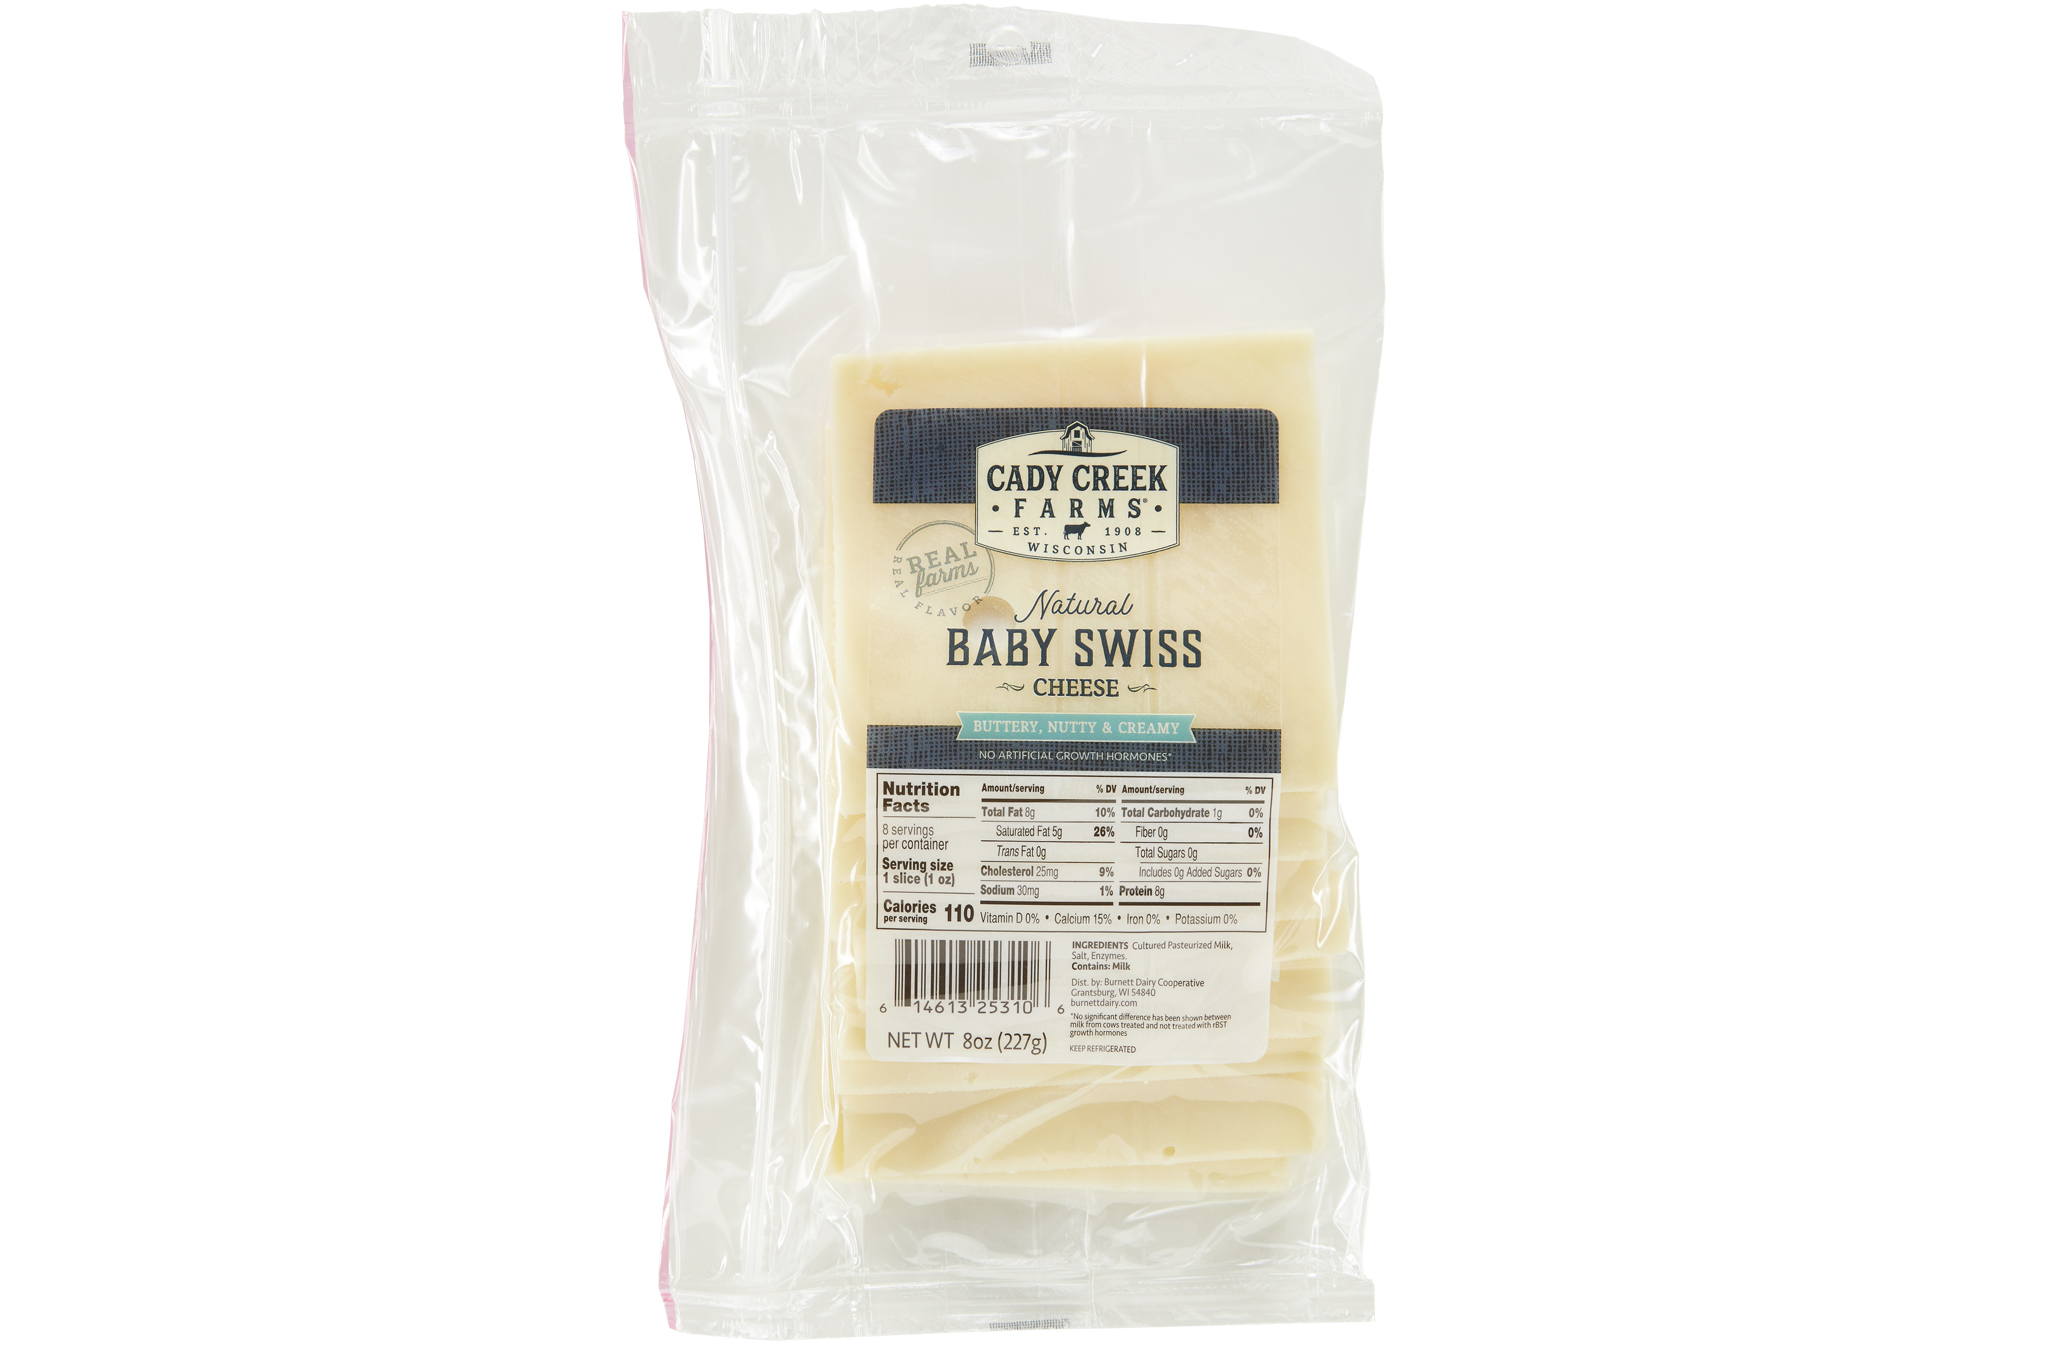 Cady Creek Farms Baby Swiss 8 oz slices